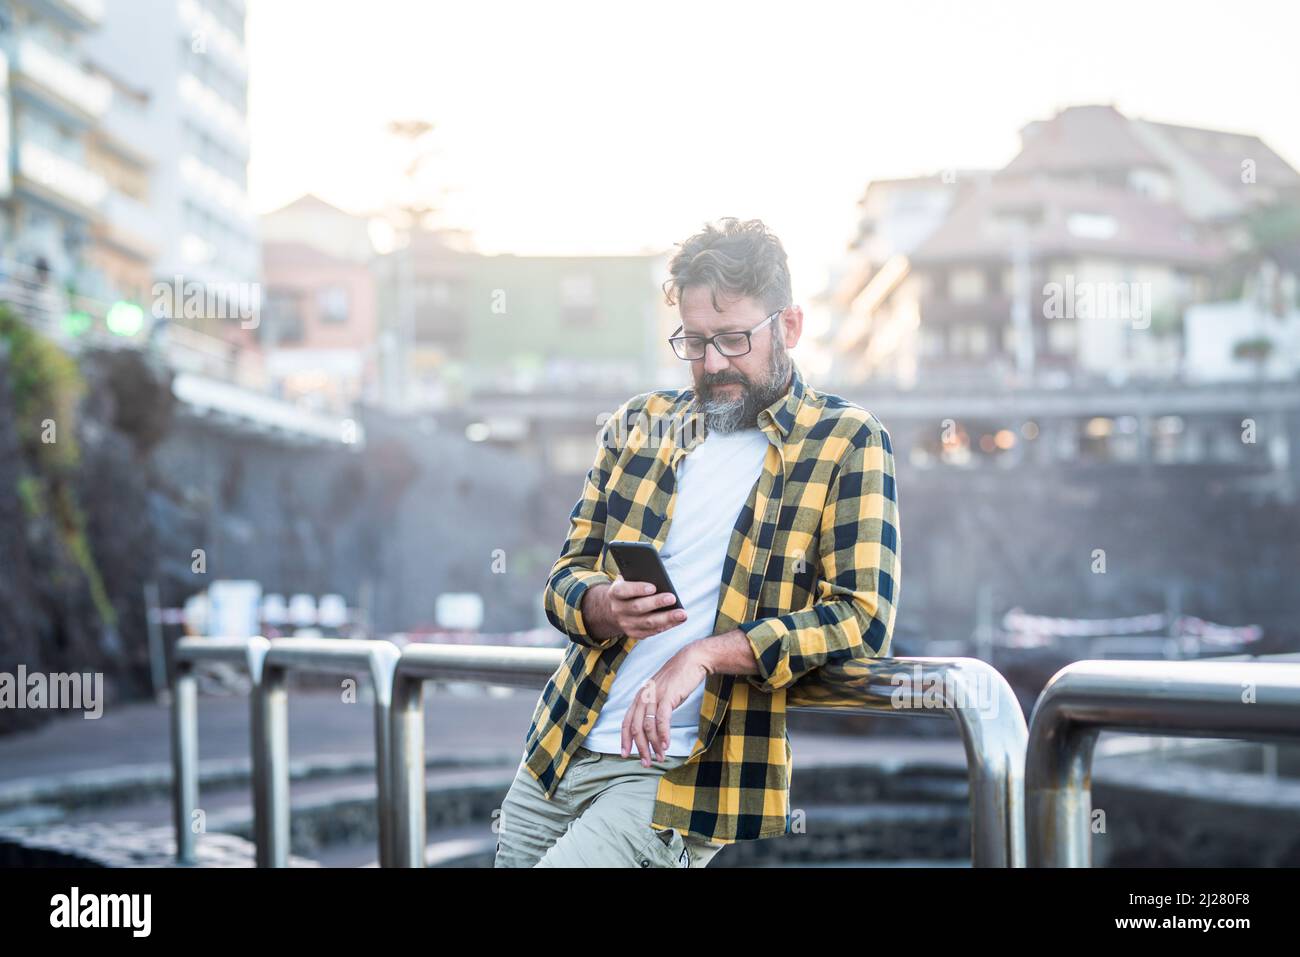 Junge Erwachsene reifen kaukasischen Mann mit Handy im Freien mit Wireless Internet kostenlose Verbindung. Männliche Menschen nutzen an sonnigen Tagen ein Mobilfunkgerät Stockfoto